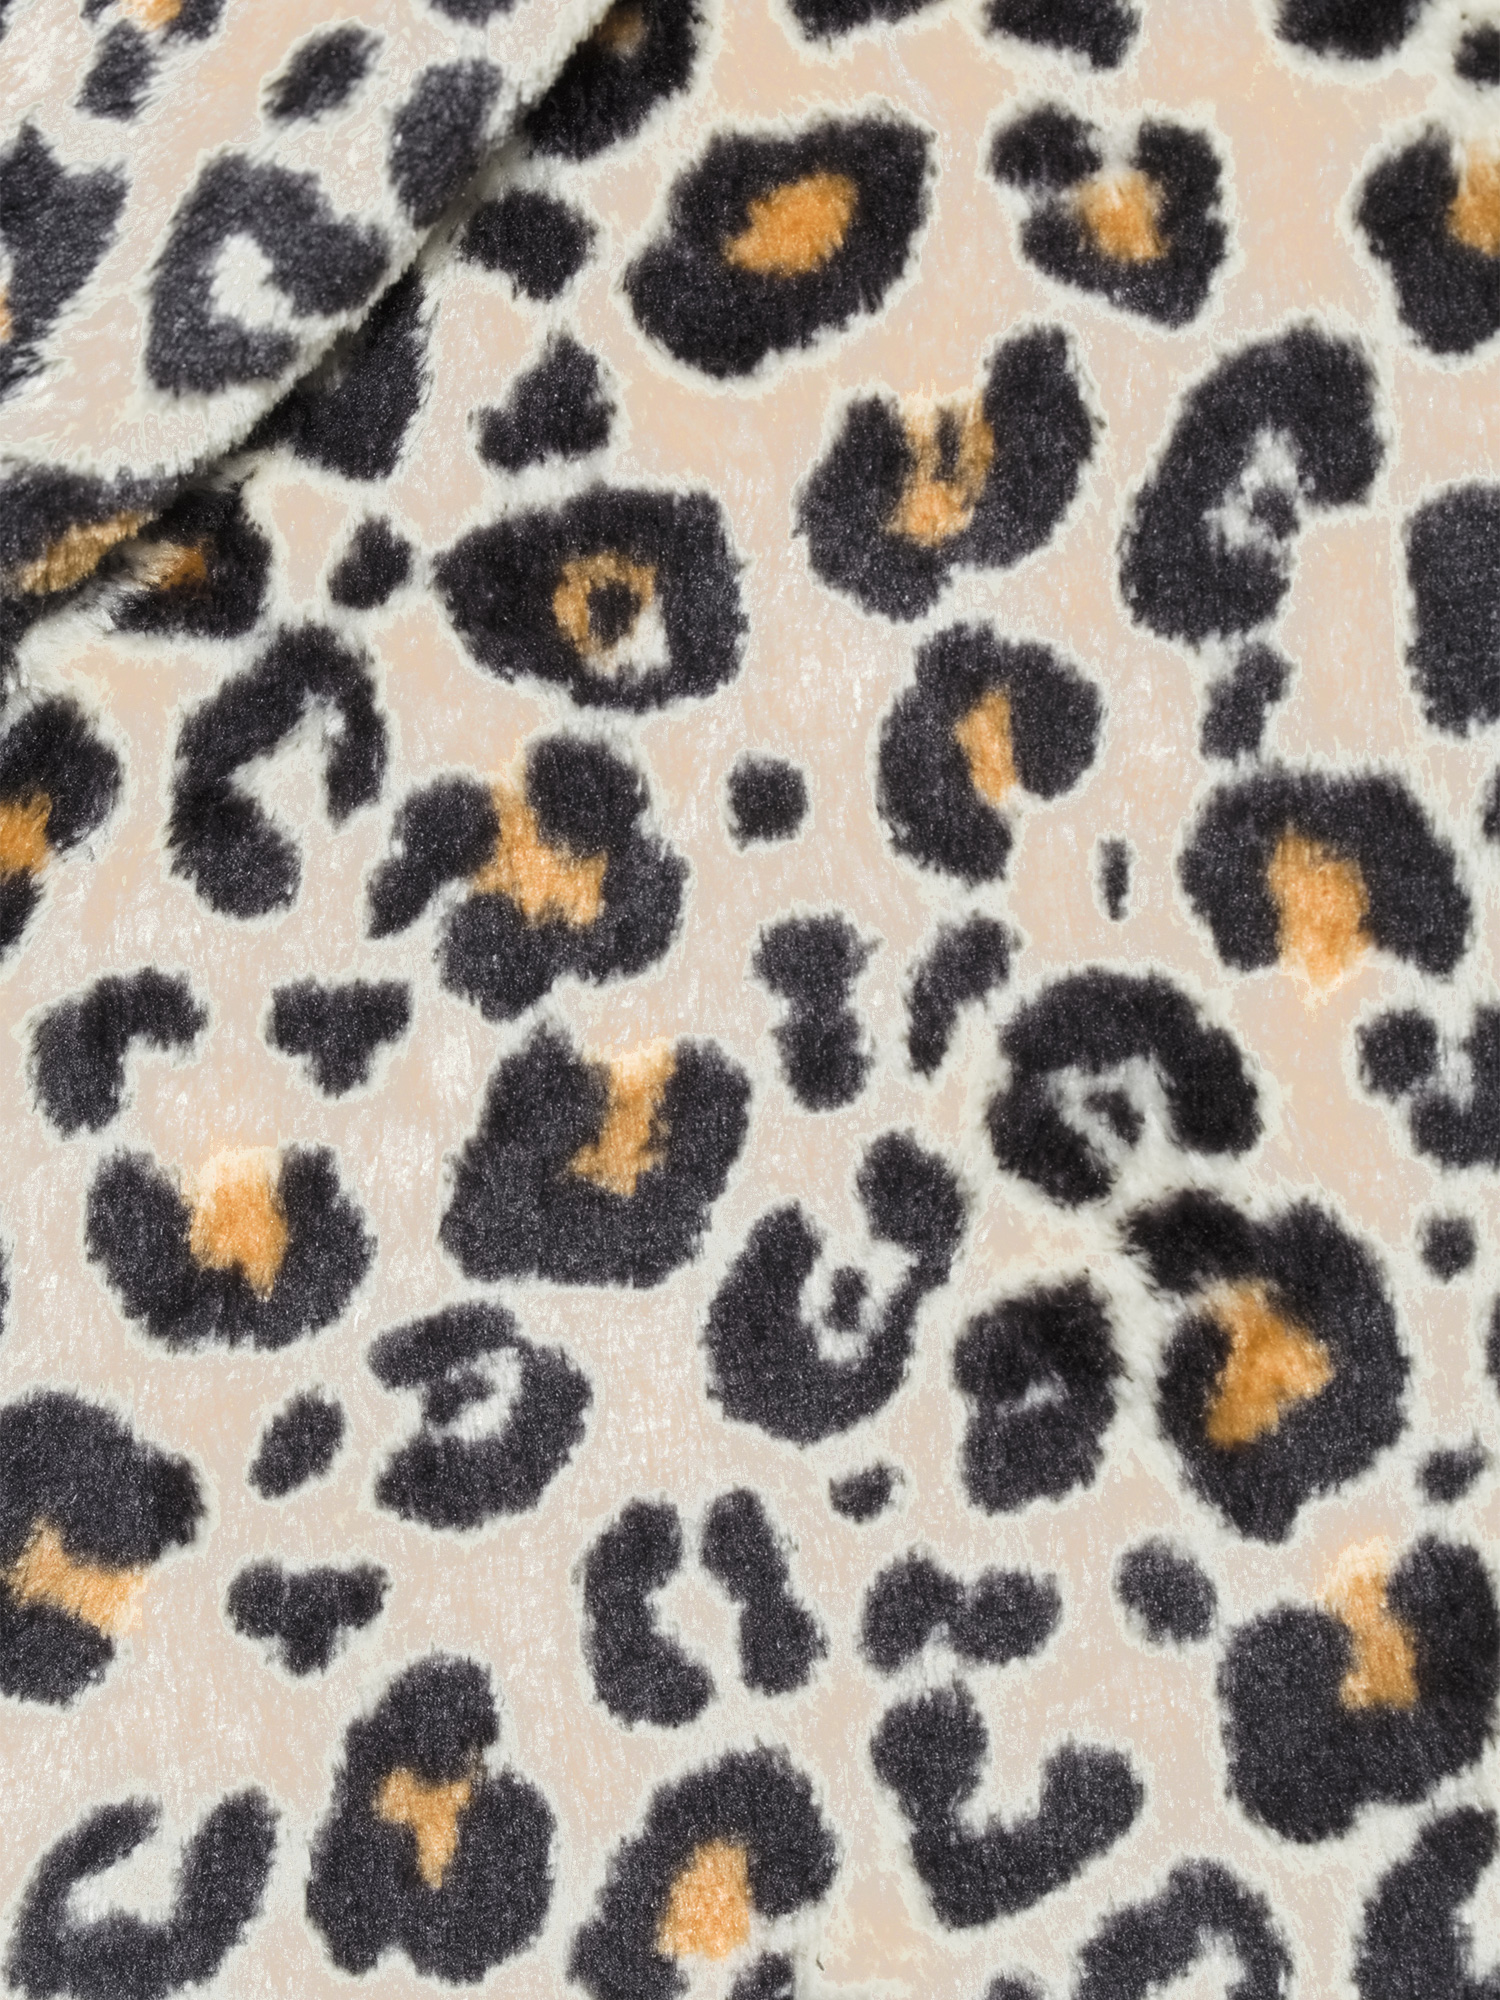 George Women's Leopard Print Union Suit - image 2 of 6